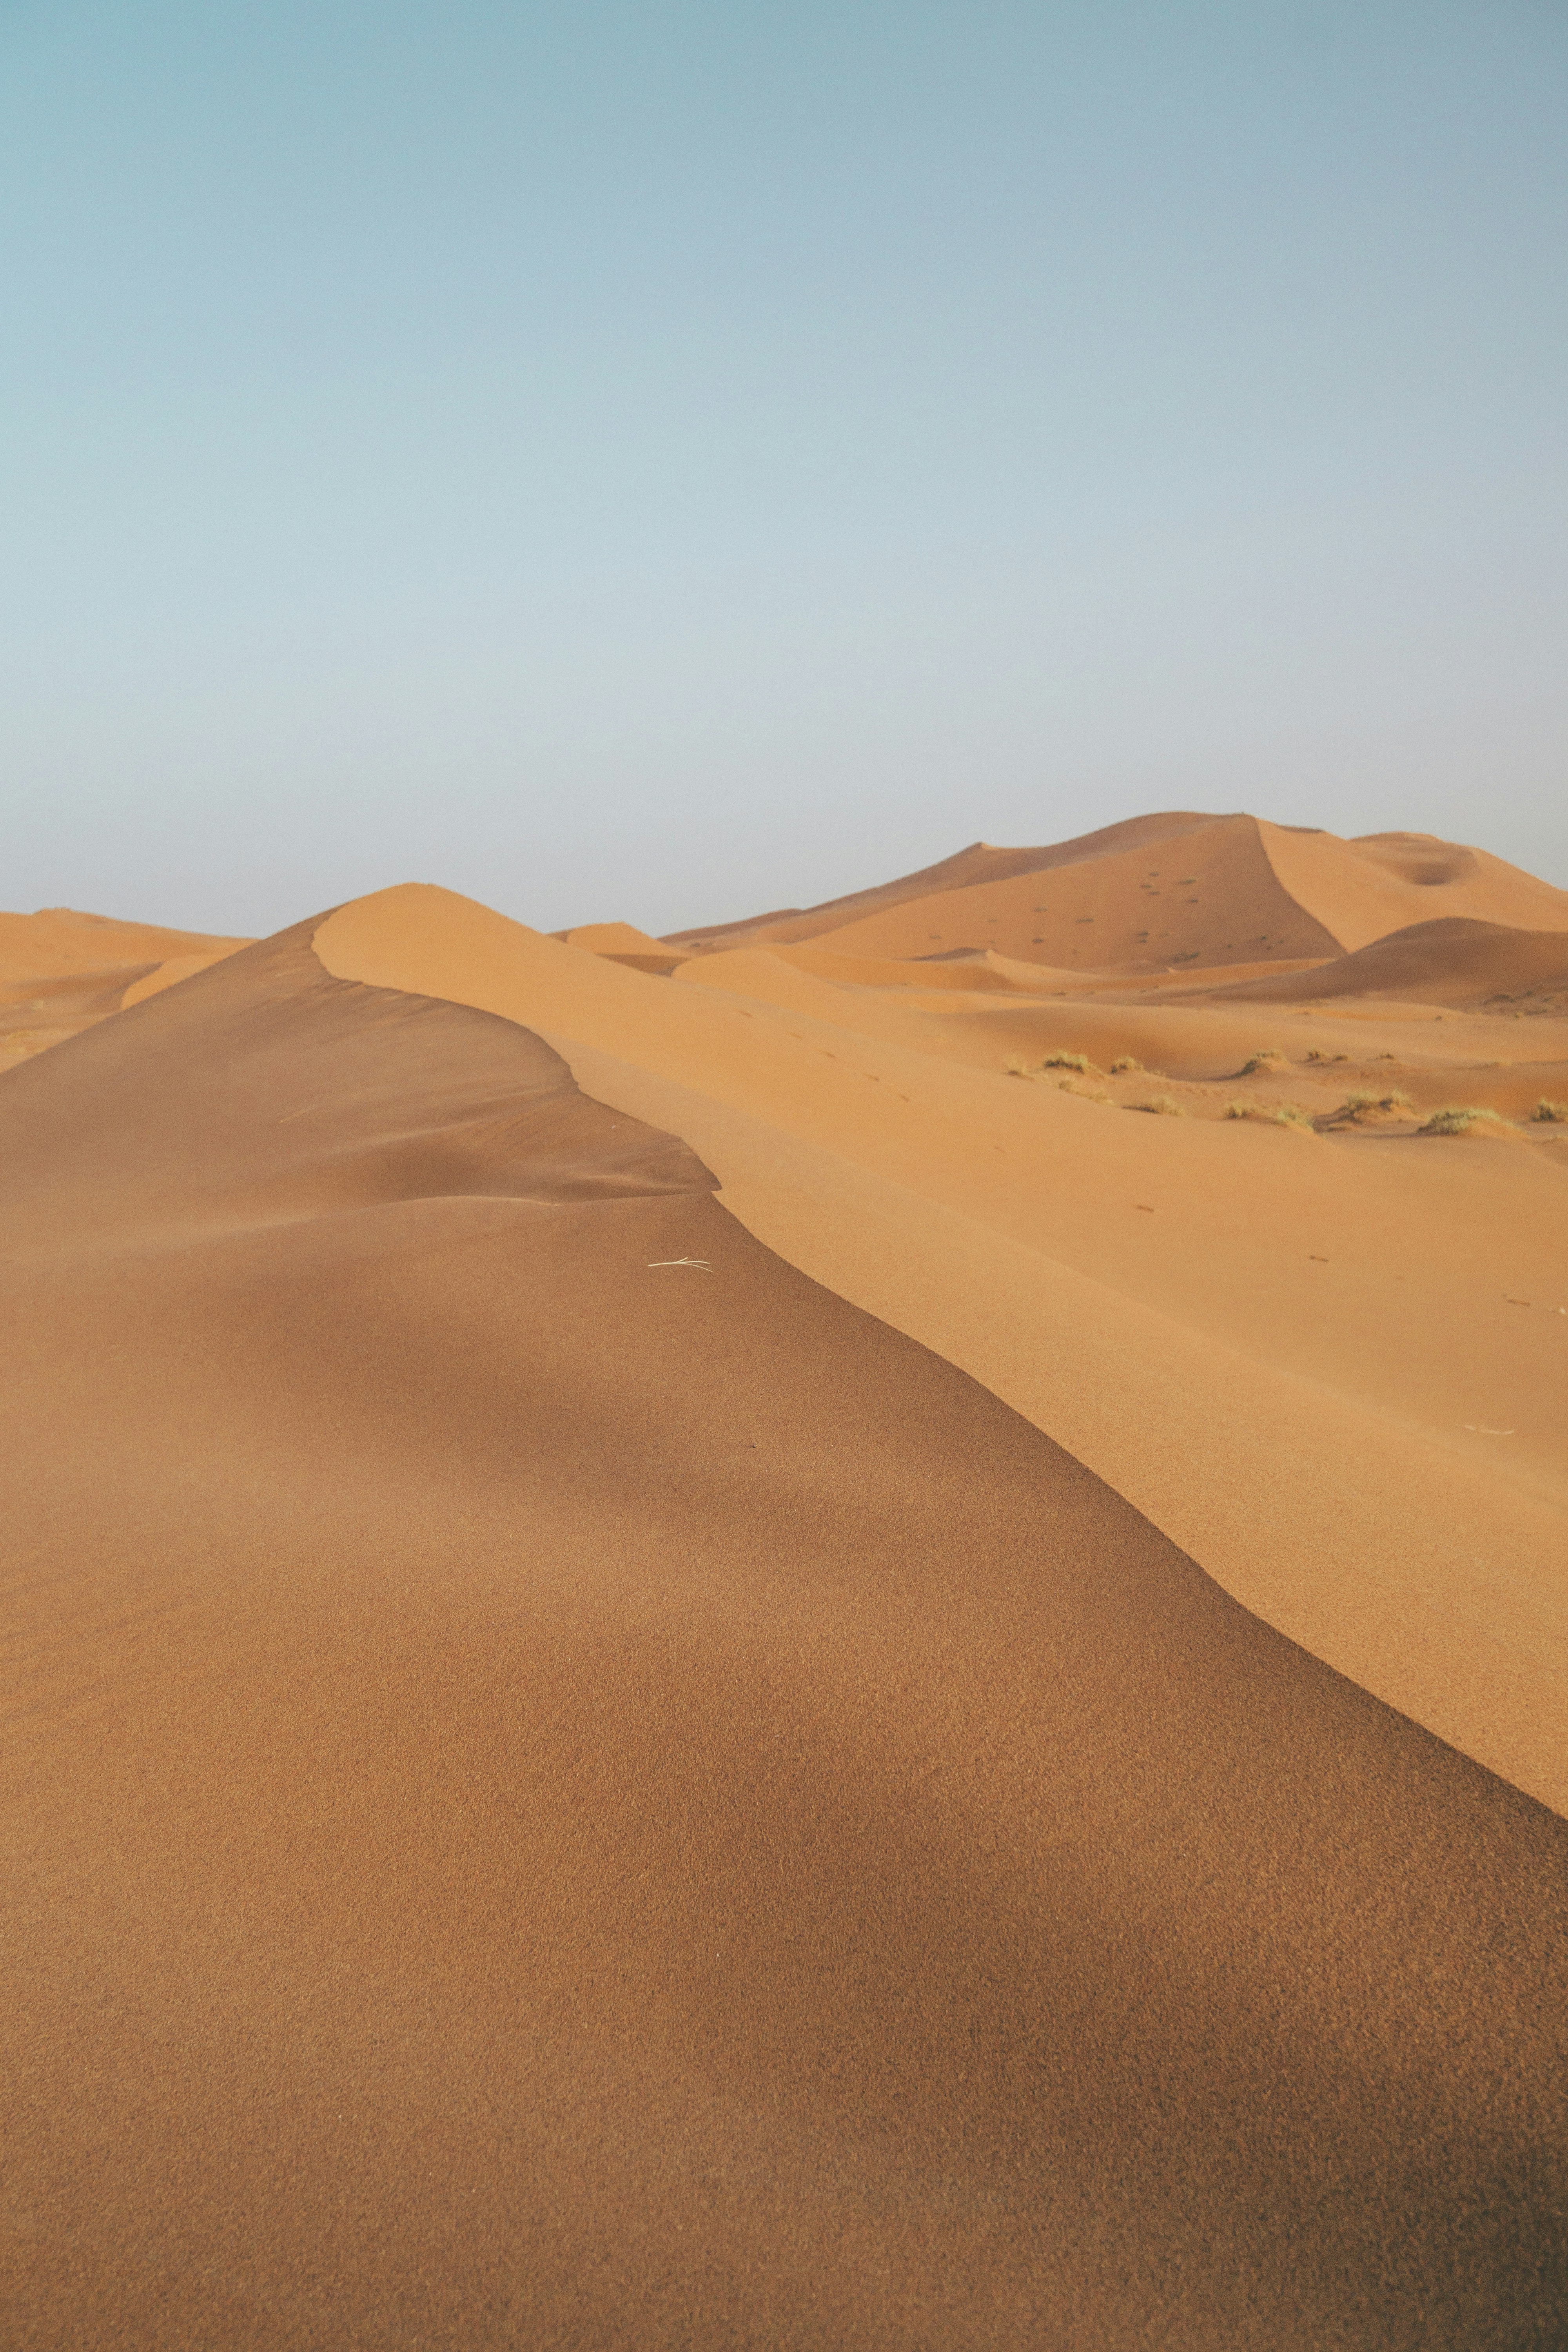 desert sand during daytime